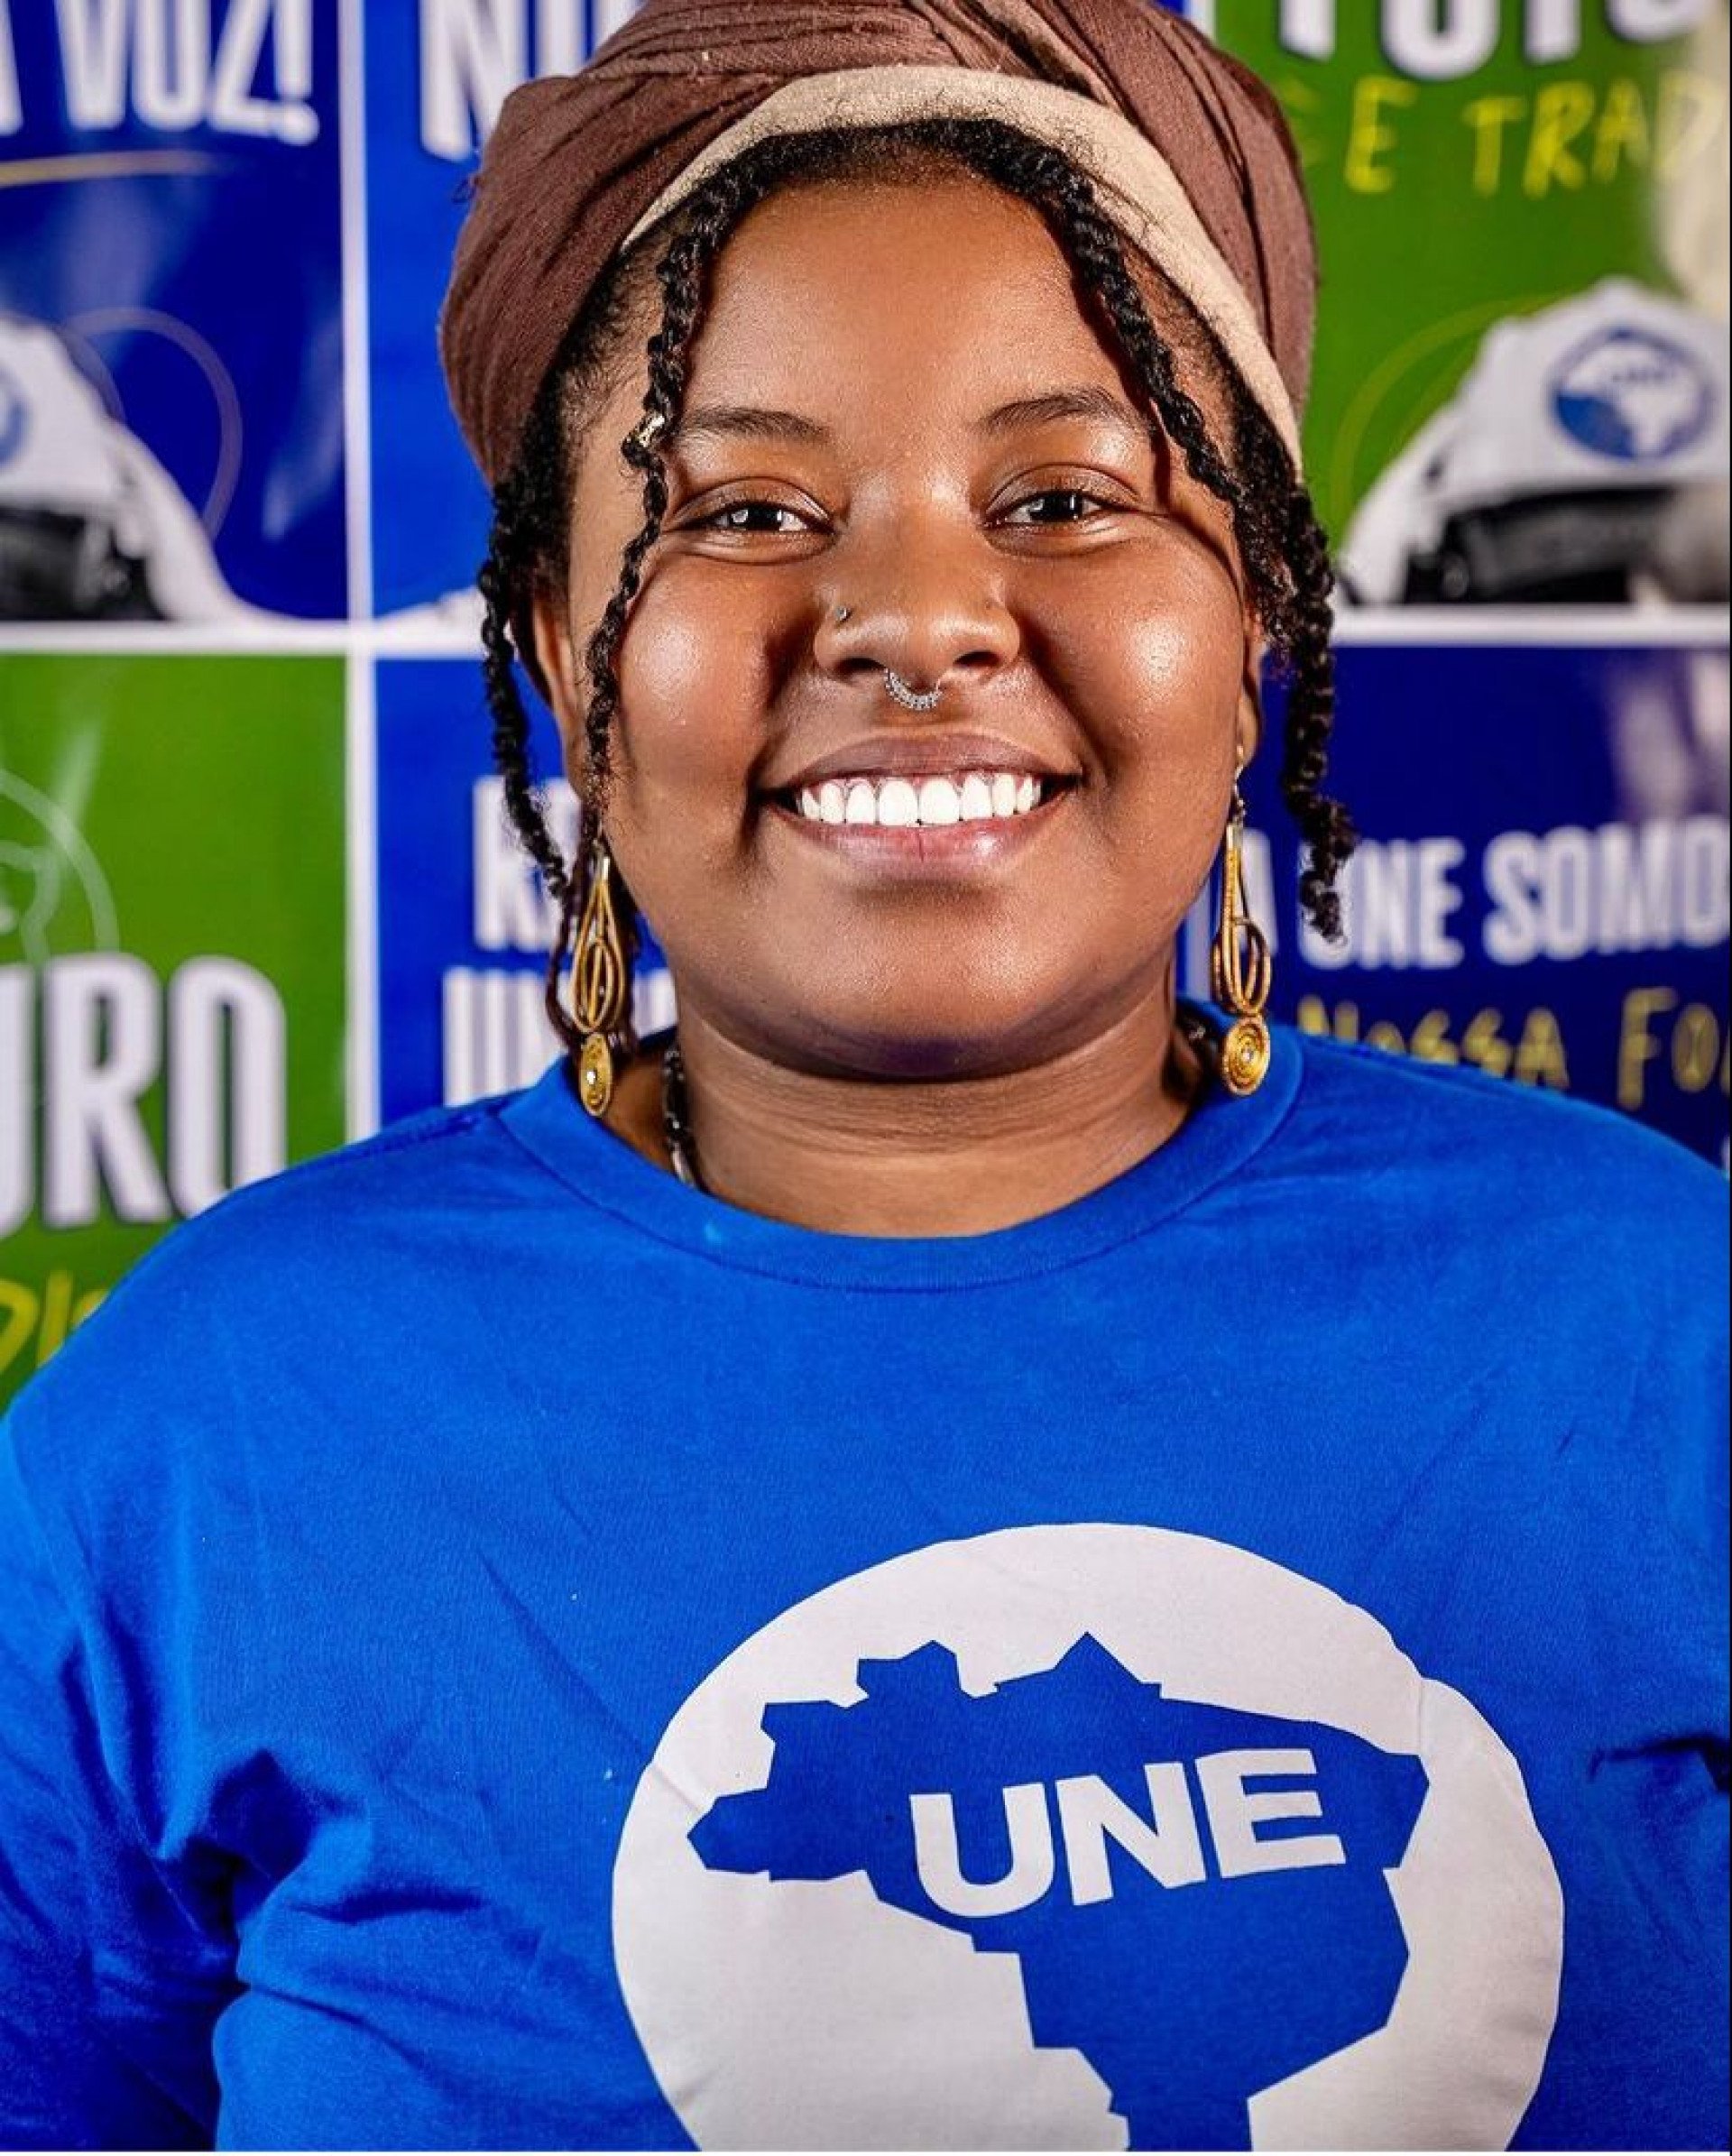 Diretora da União Nacional dos Estudantes (UNE), Larissa Vulcão - Reprodução/Redes sociais